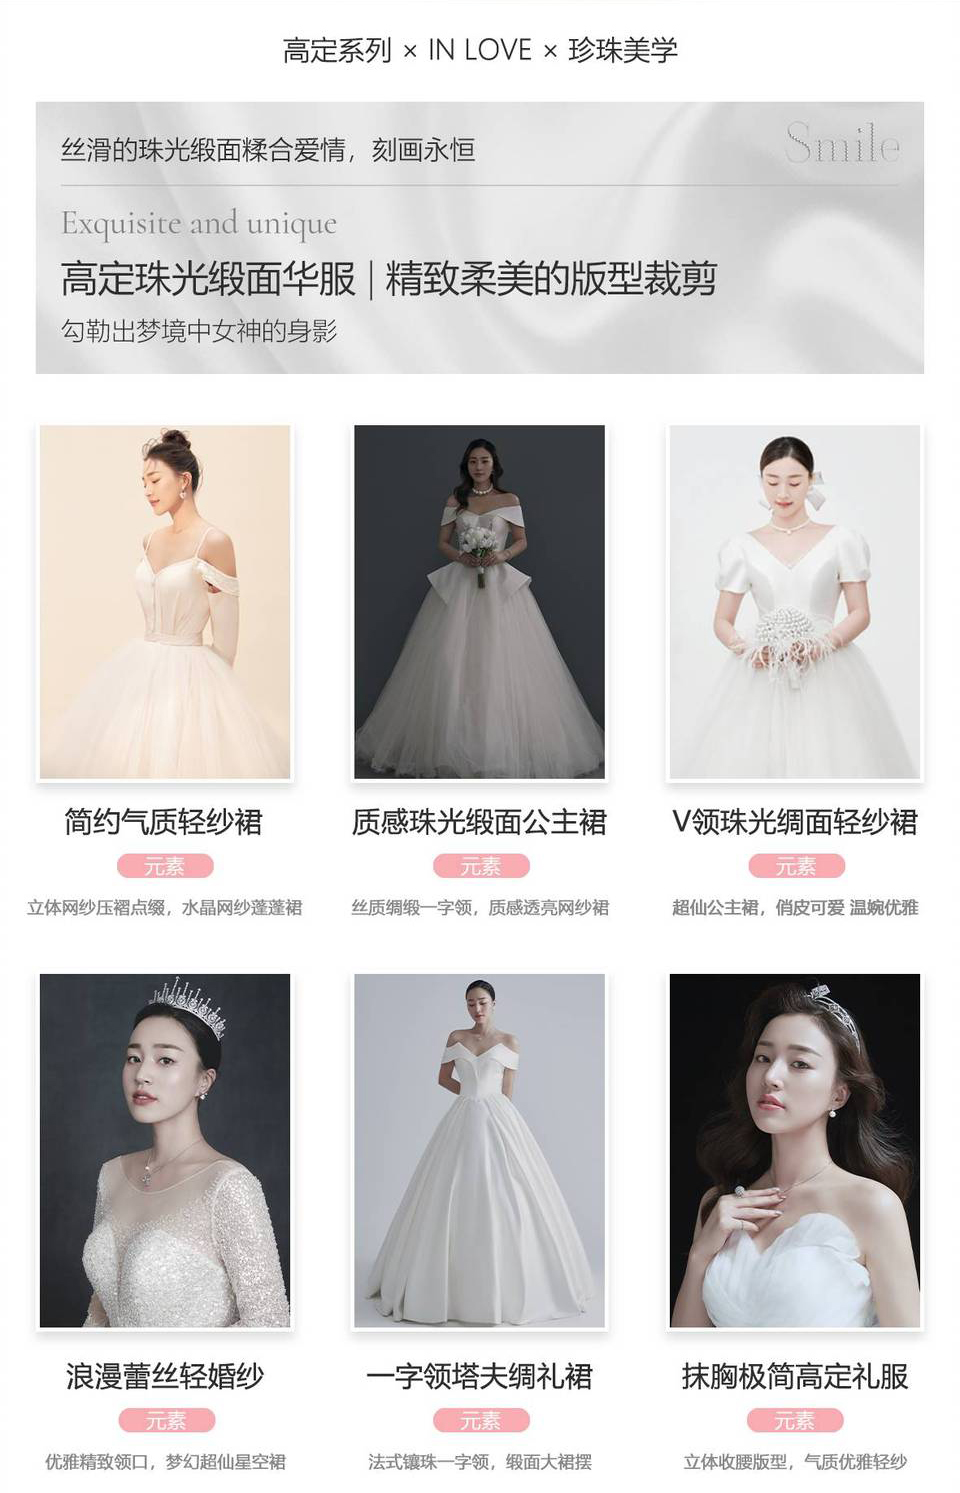 气质韩式婚纱摄影《高定系列6.0》珍珠美学婚纱照